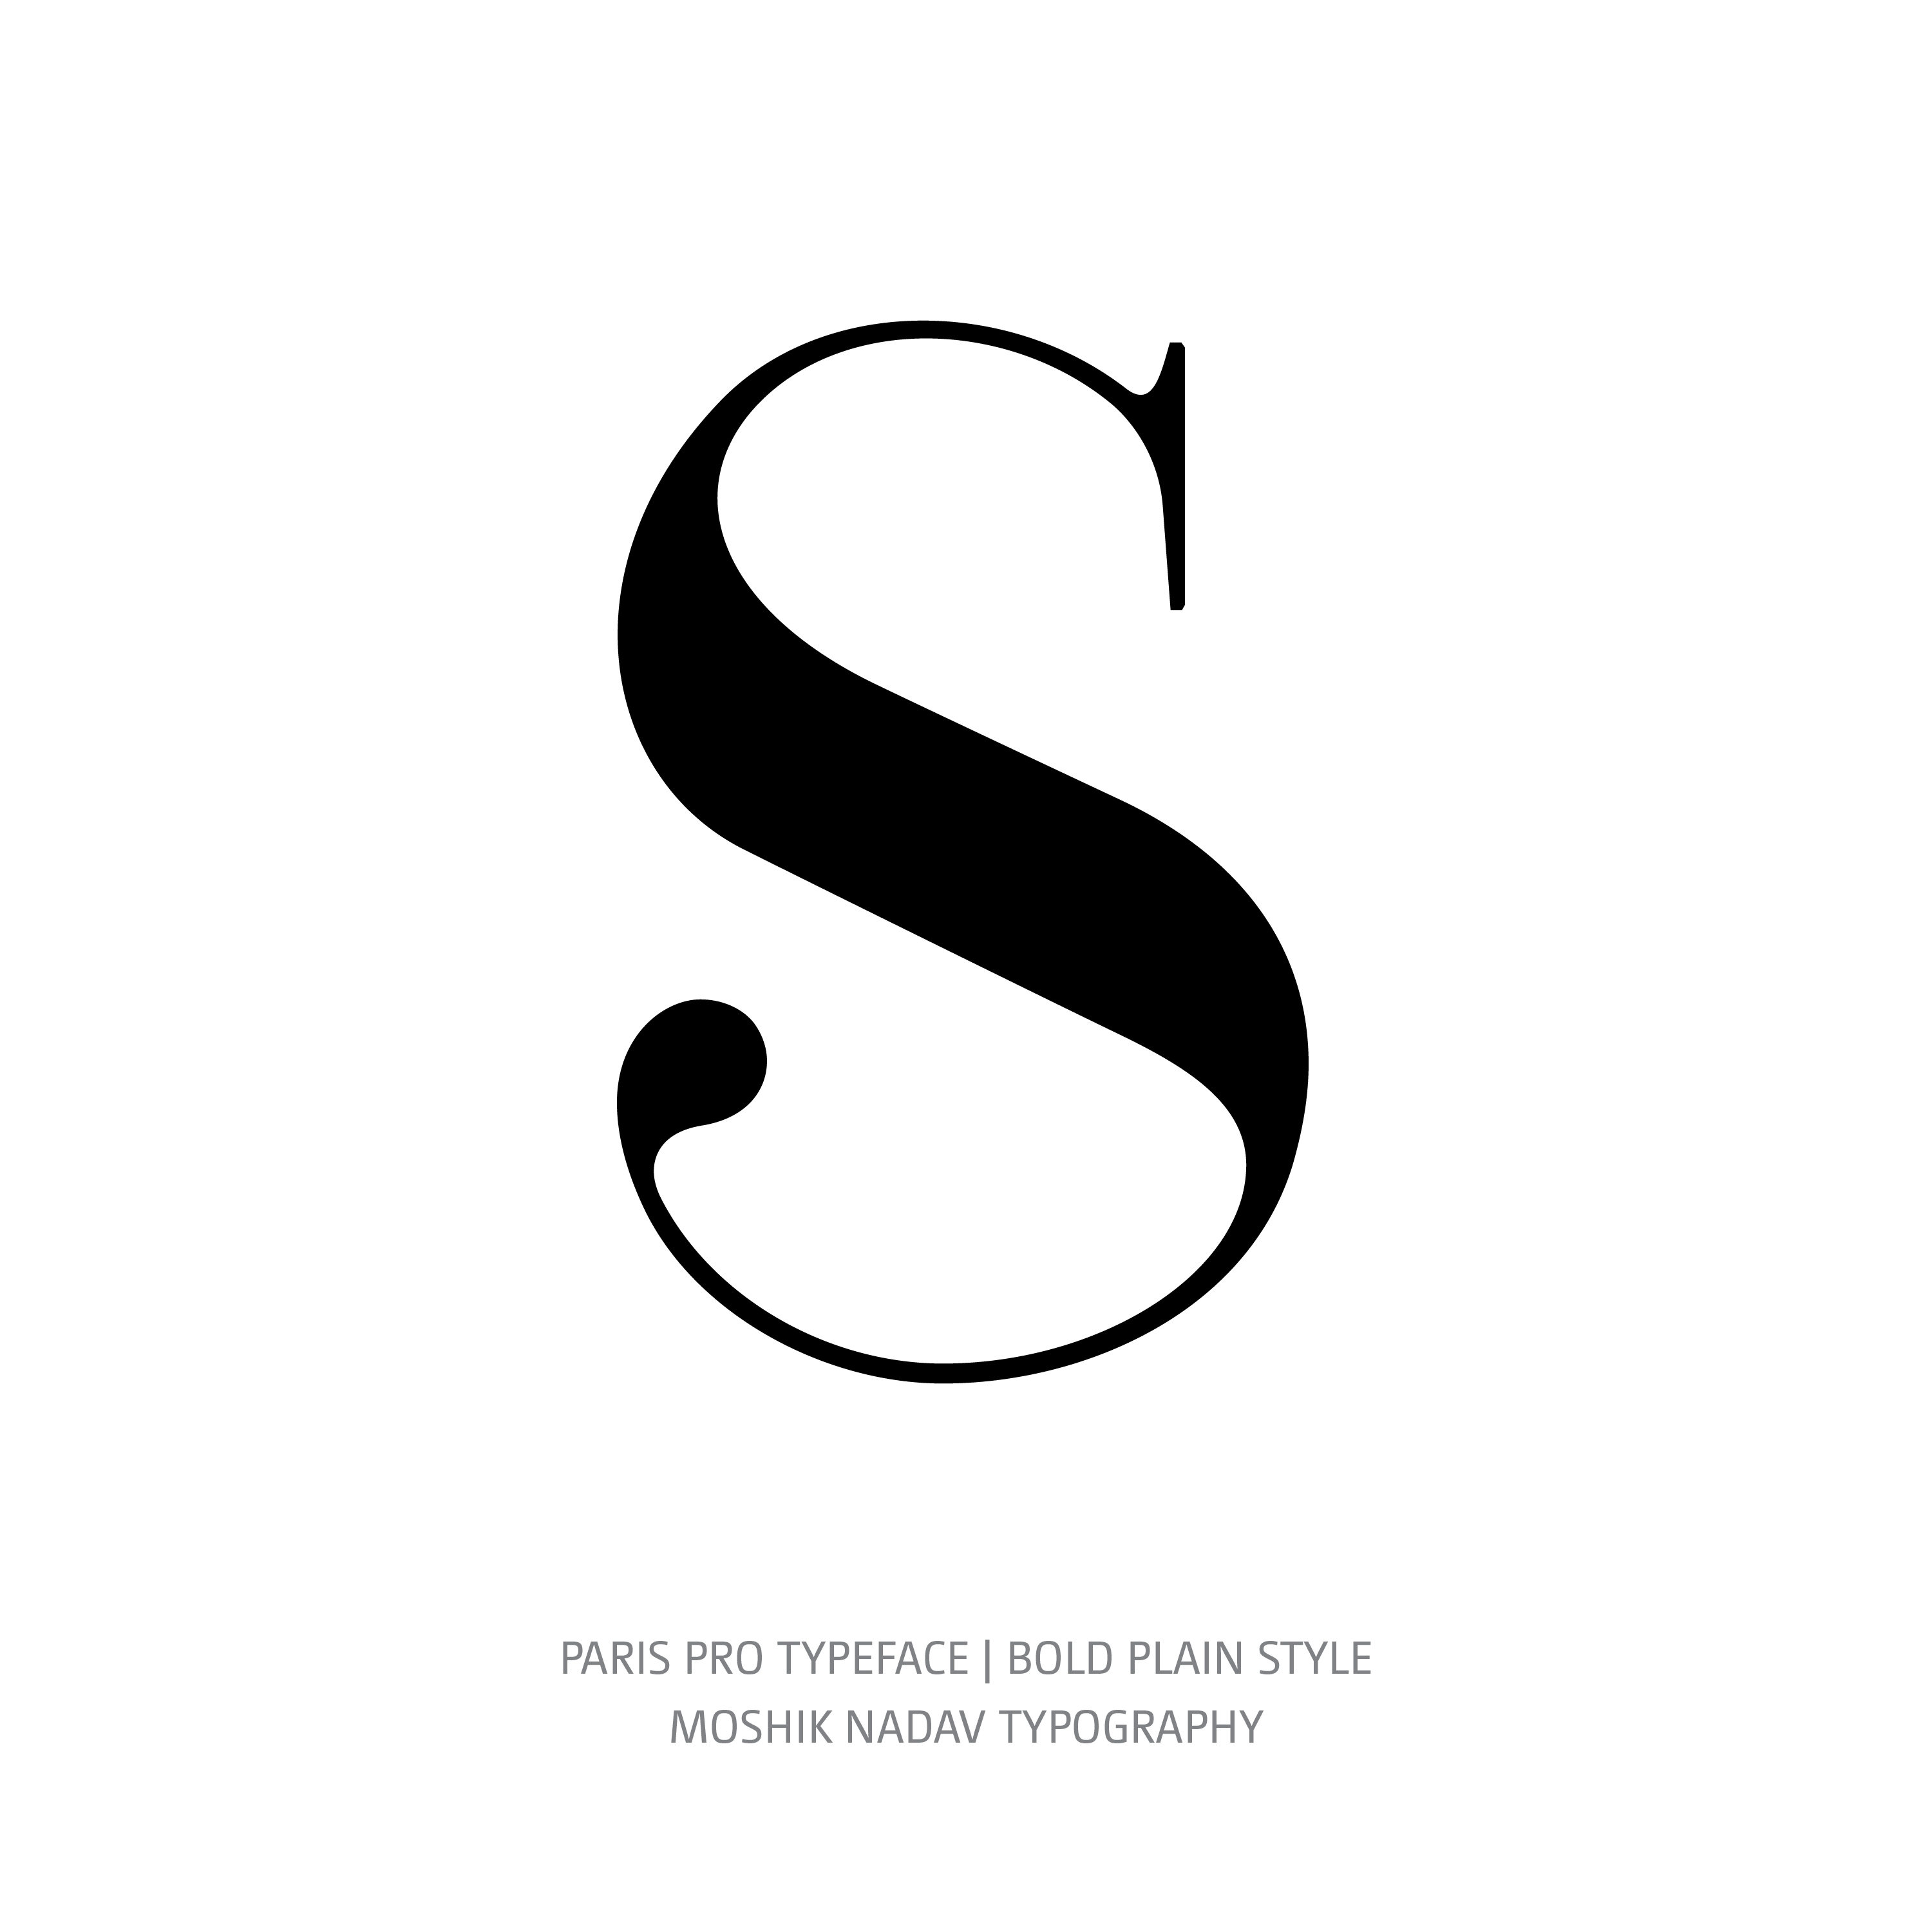 Paris Pro Typeface Bold Plain S